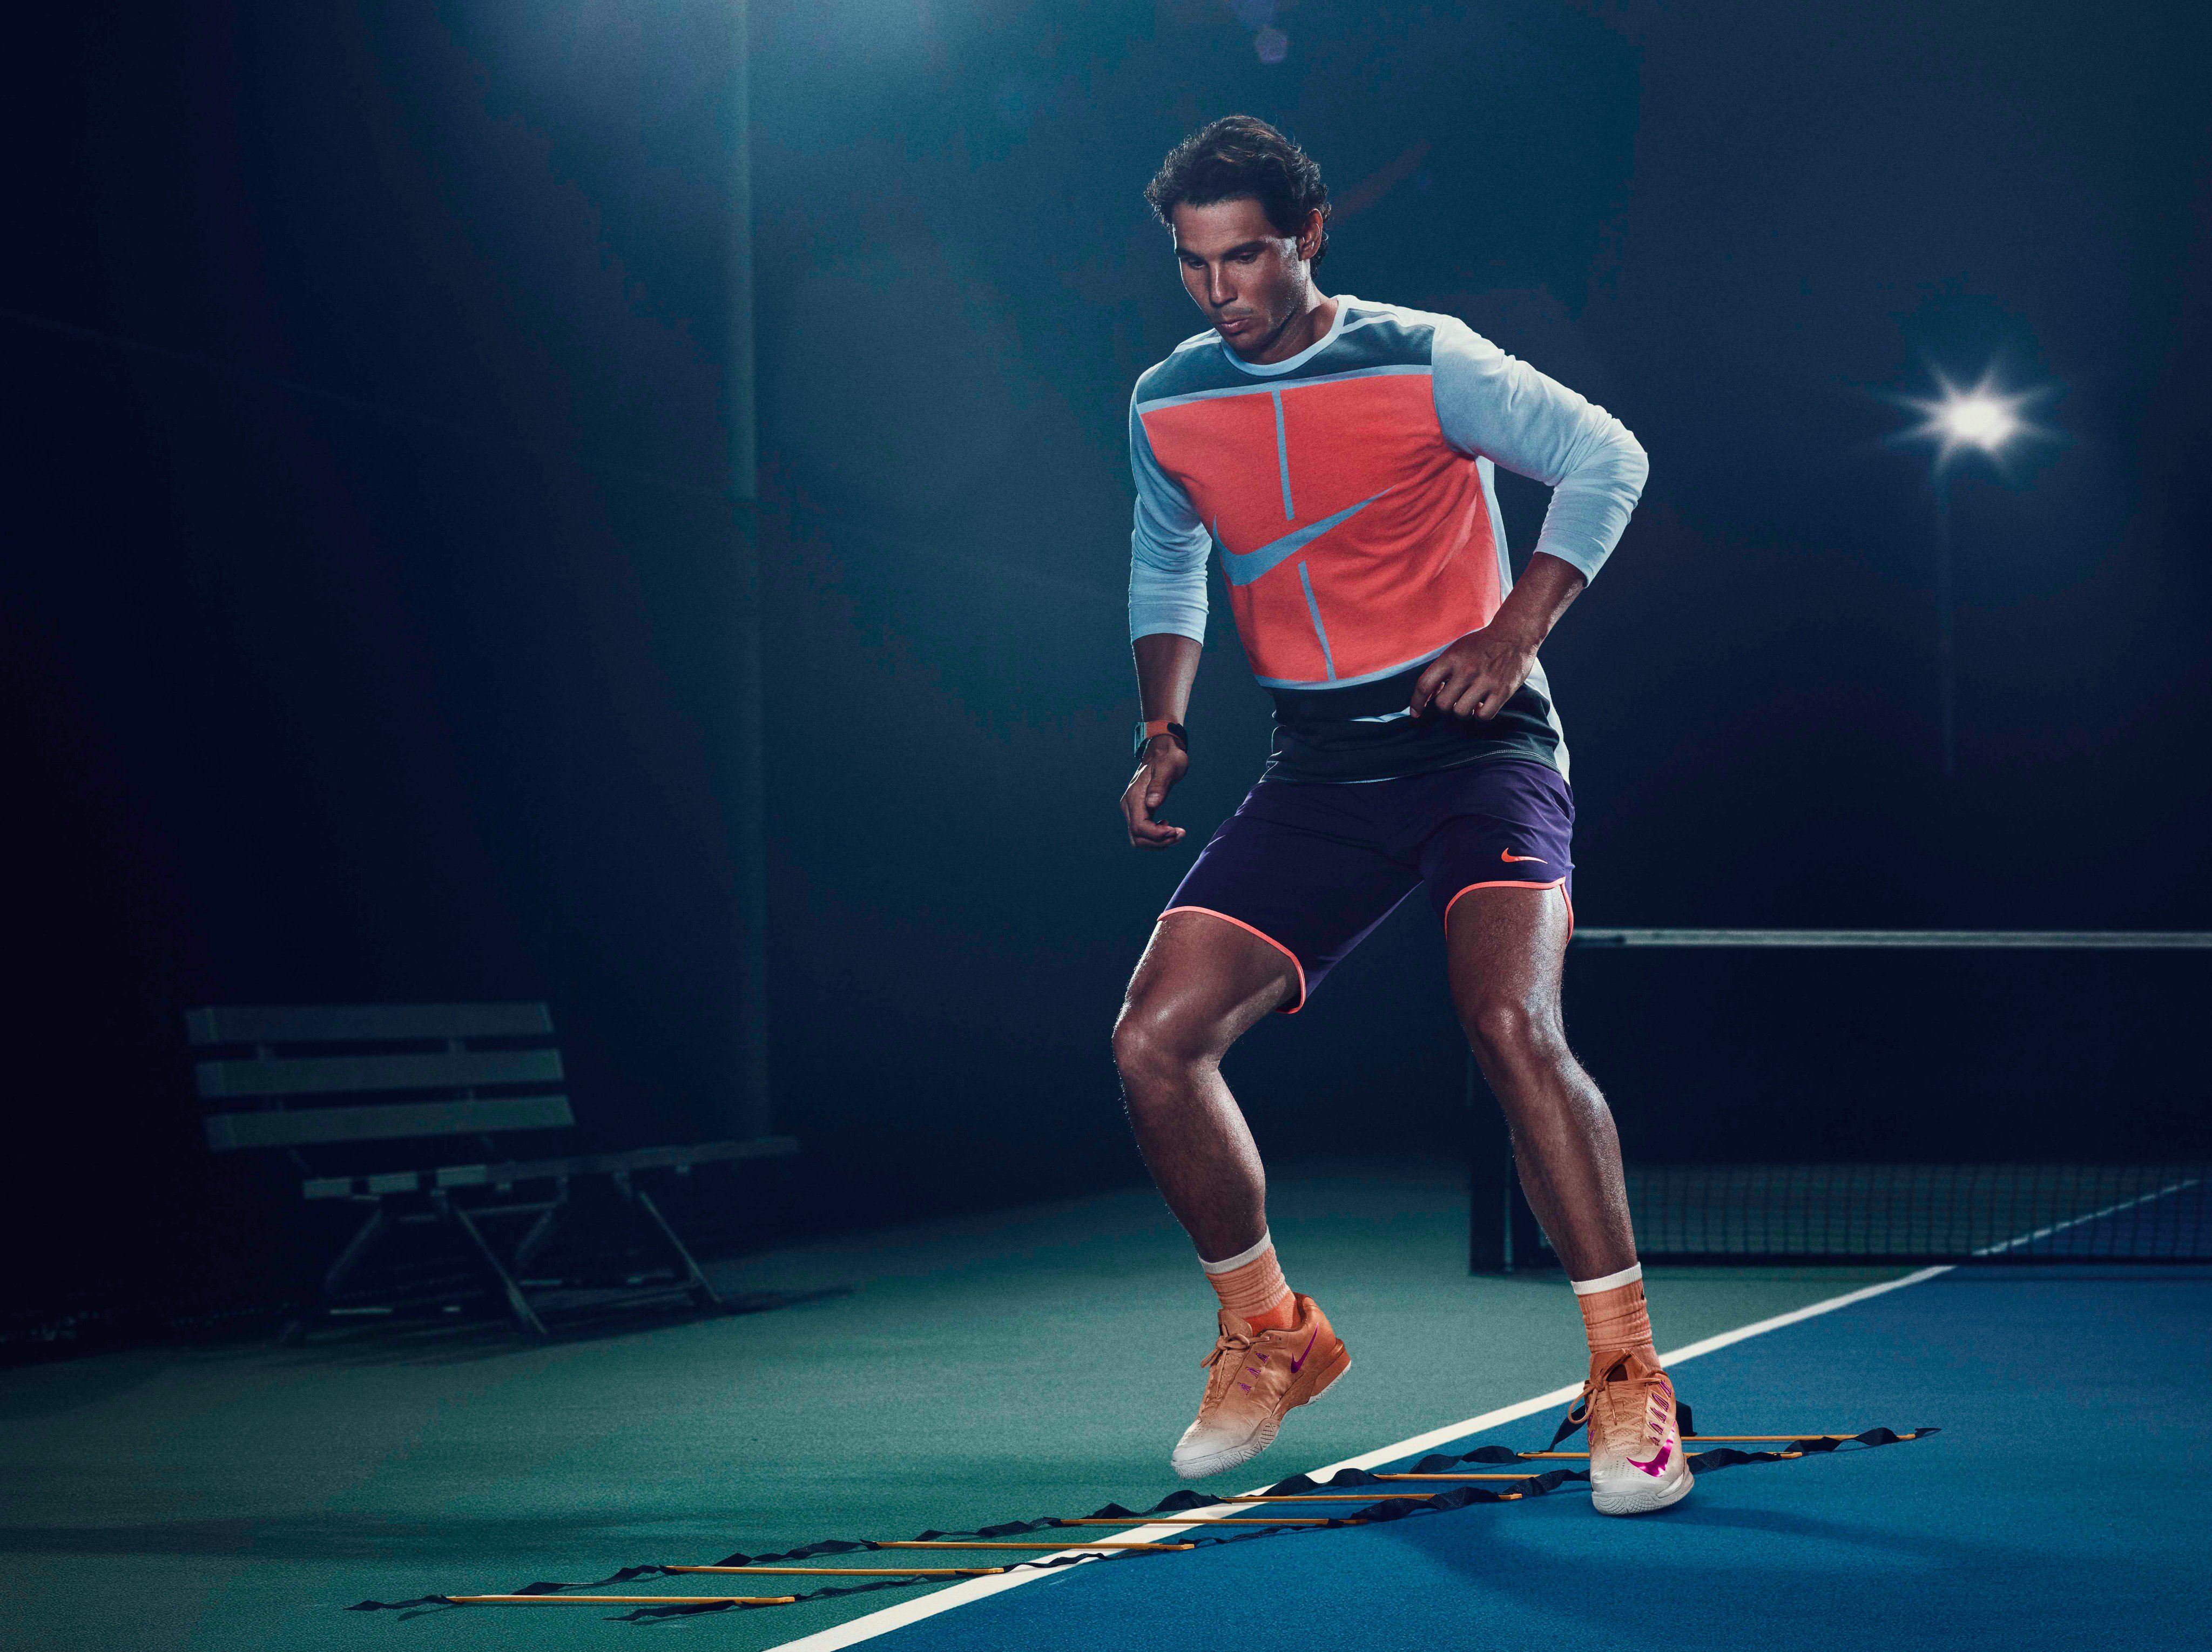 Rafa Nadal on Twitter: "Flying colors. @NikeCourt https://t.co/bq62lfIM55  https://t.co/gB2yVROqbt" / Twitter